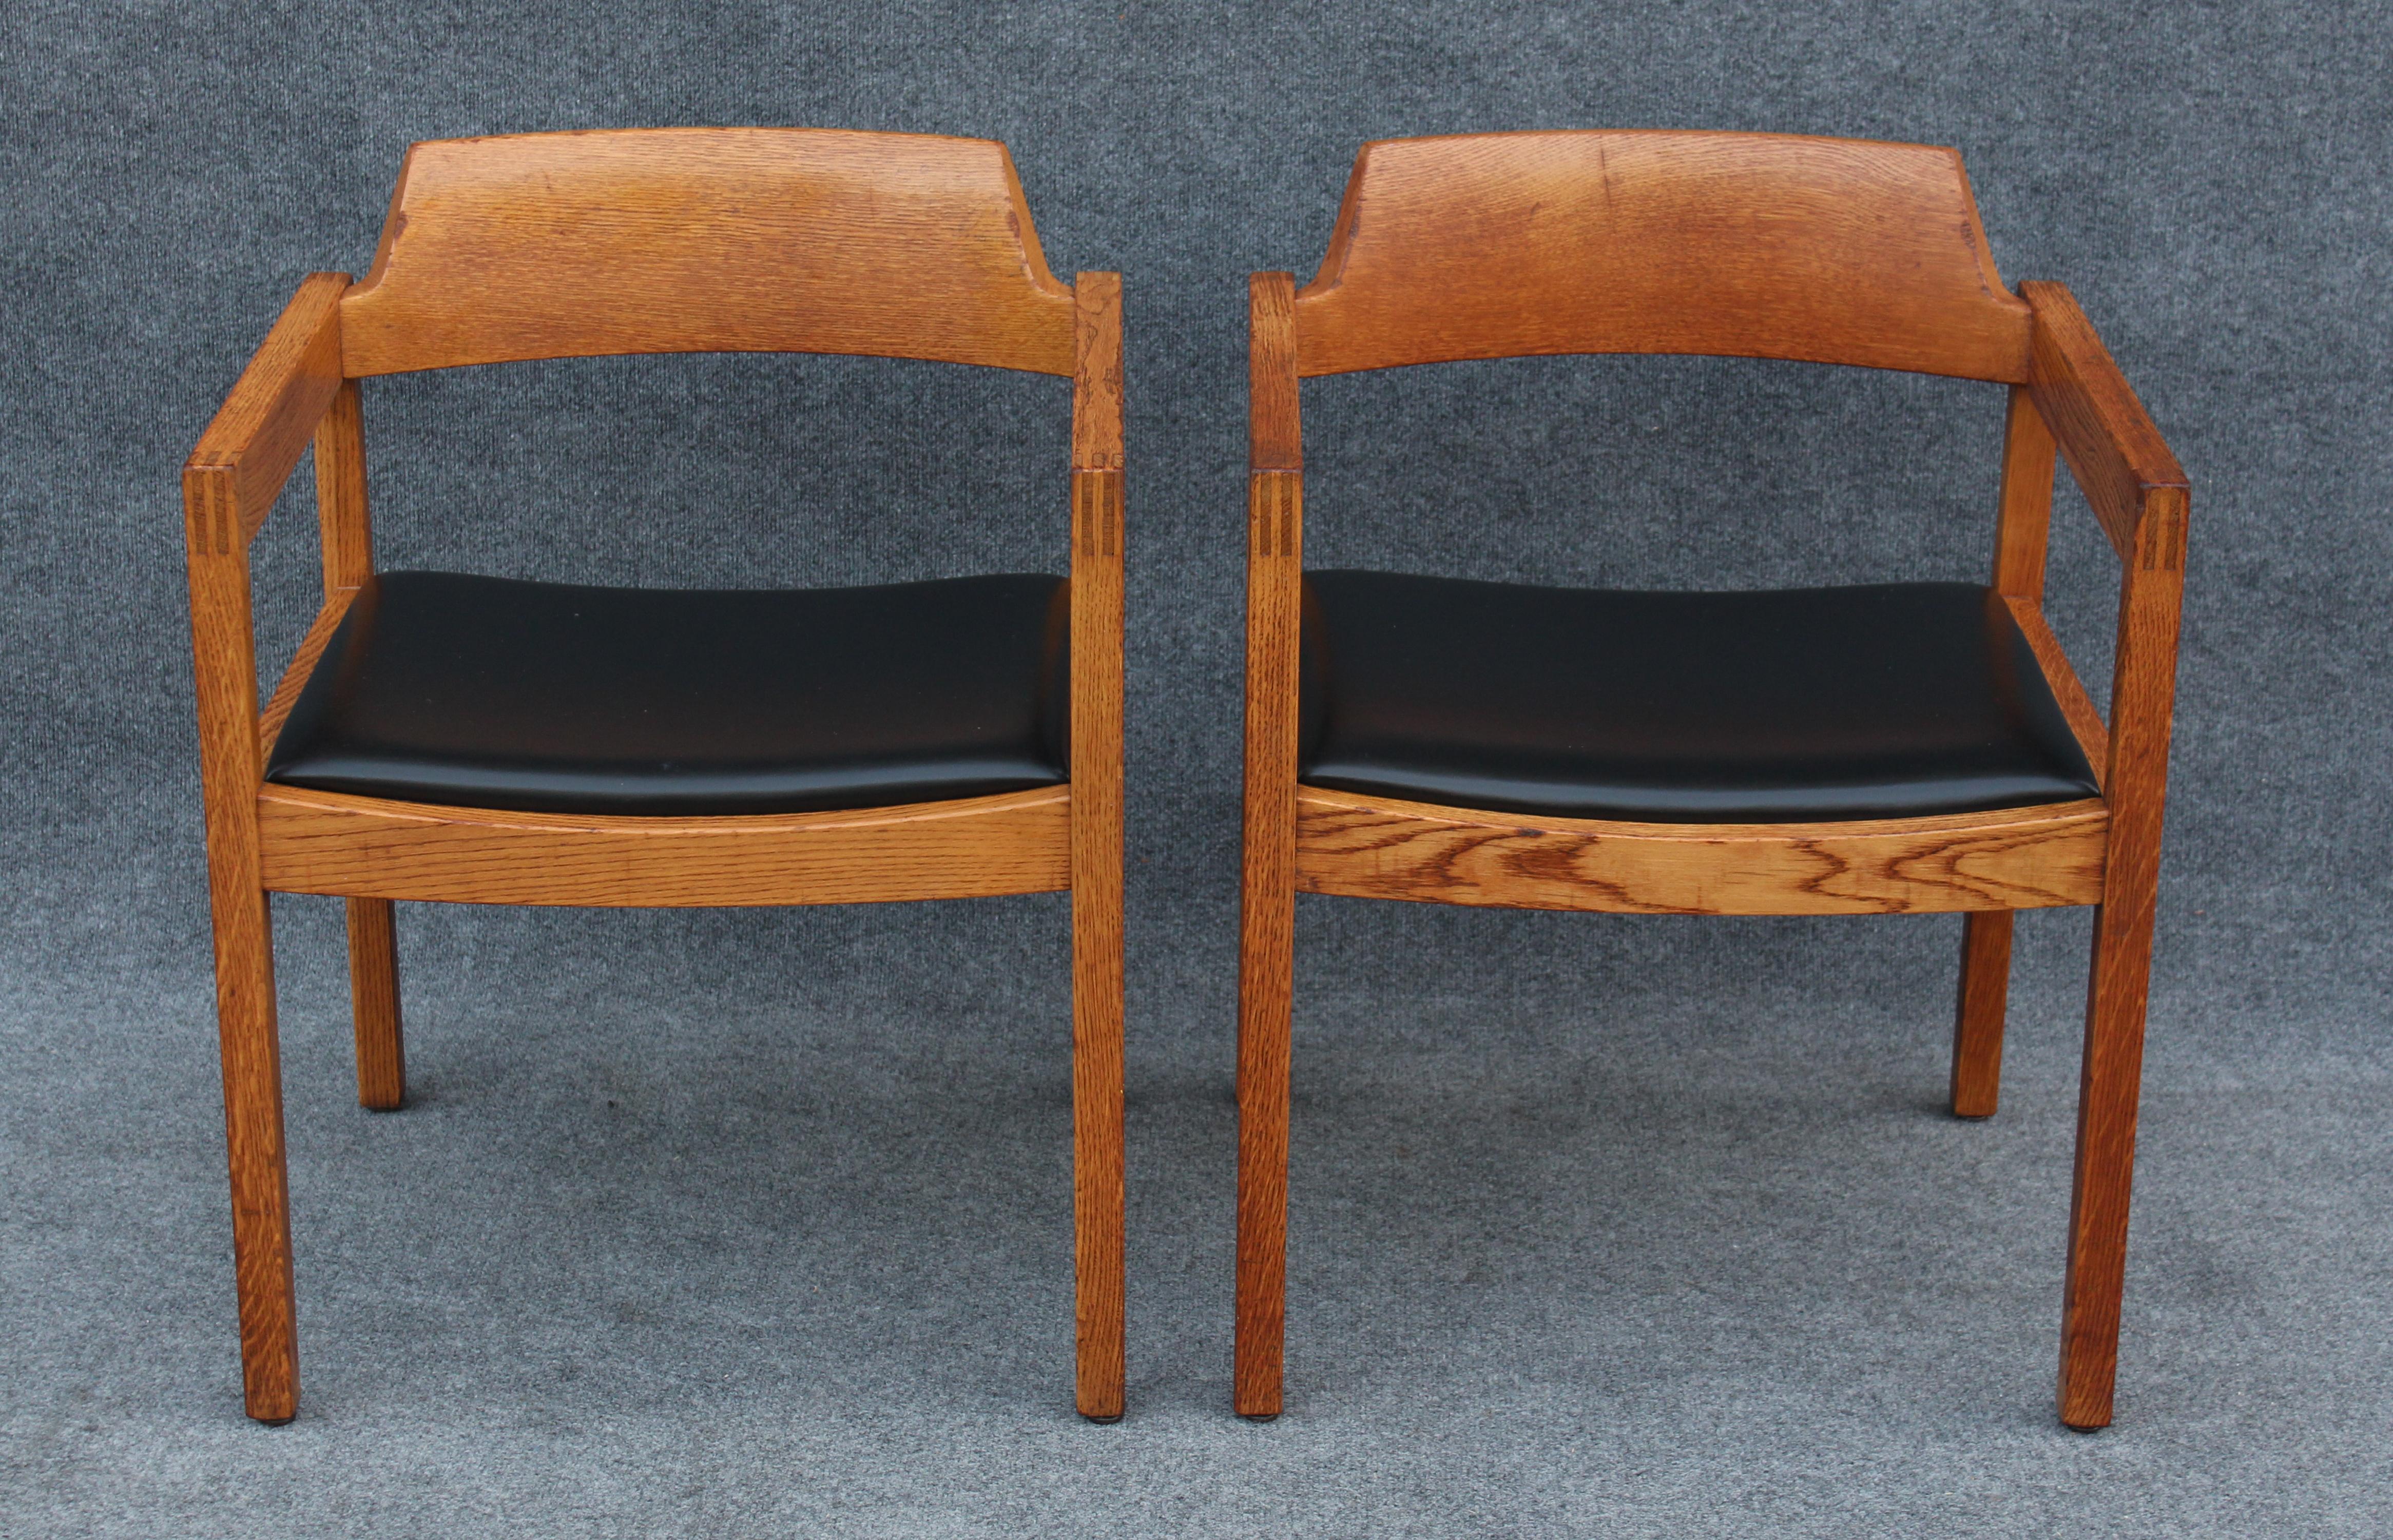 Dieses seltene Stuhlset wurde in den 1970er Jahren von dem amerikanischen Hersteller Gunlocke entworfen und hergestellt und zeichnet sich durch eine sehr hohe Qualität der Konstruktion und der Materialien aus. Das Holz für diese Stühle aus massiver